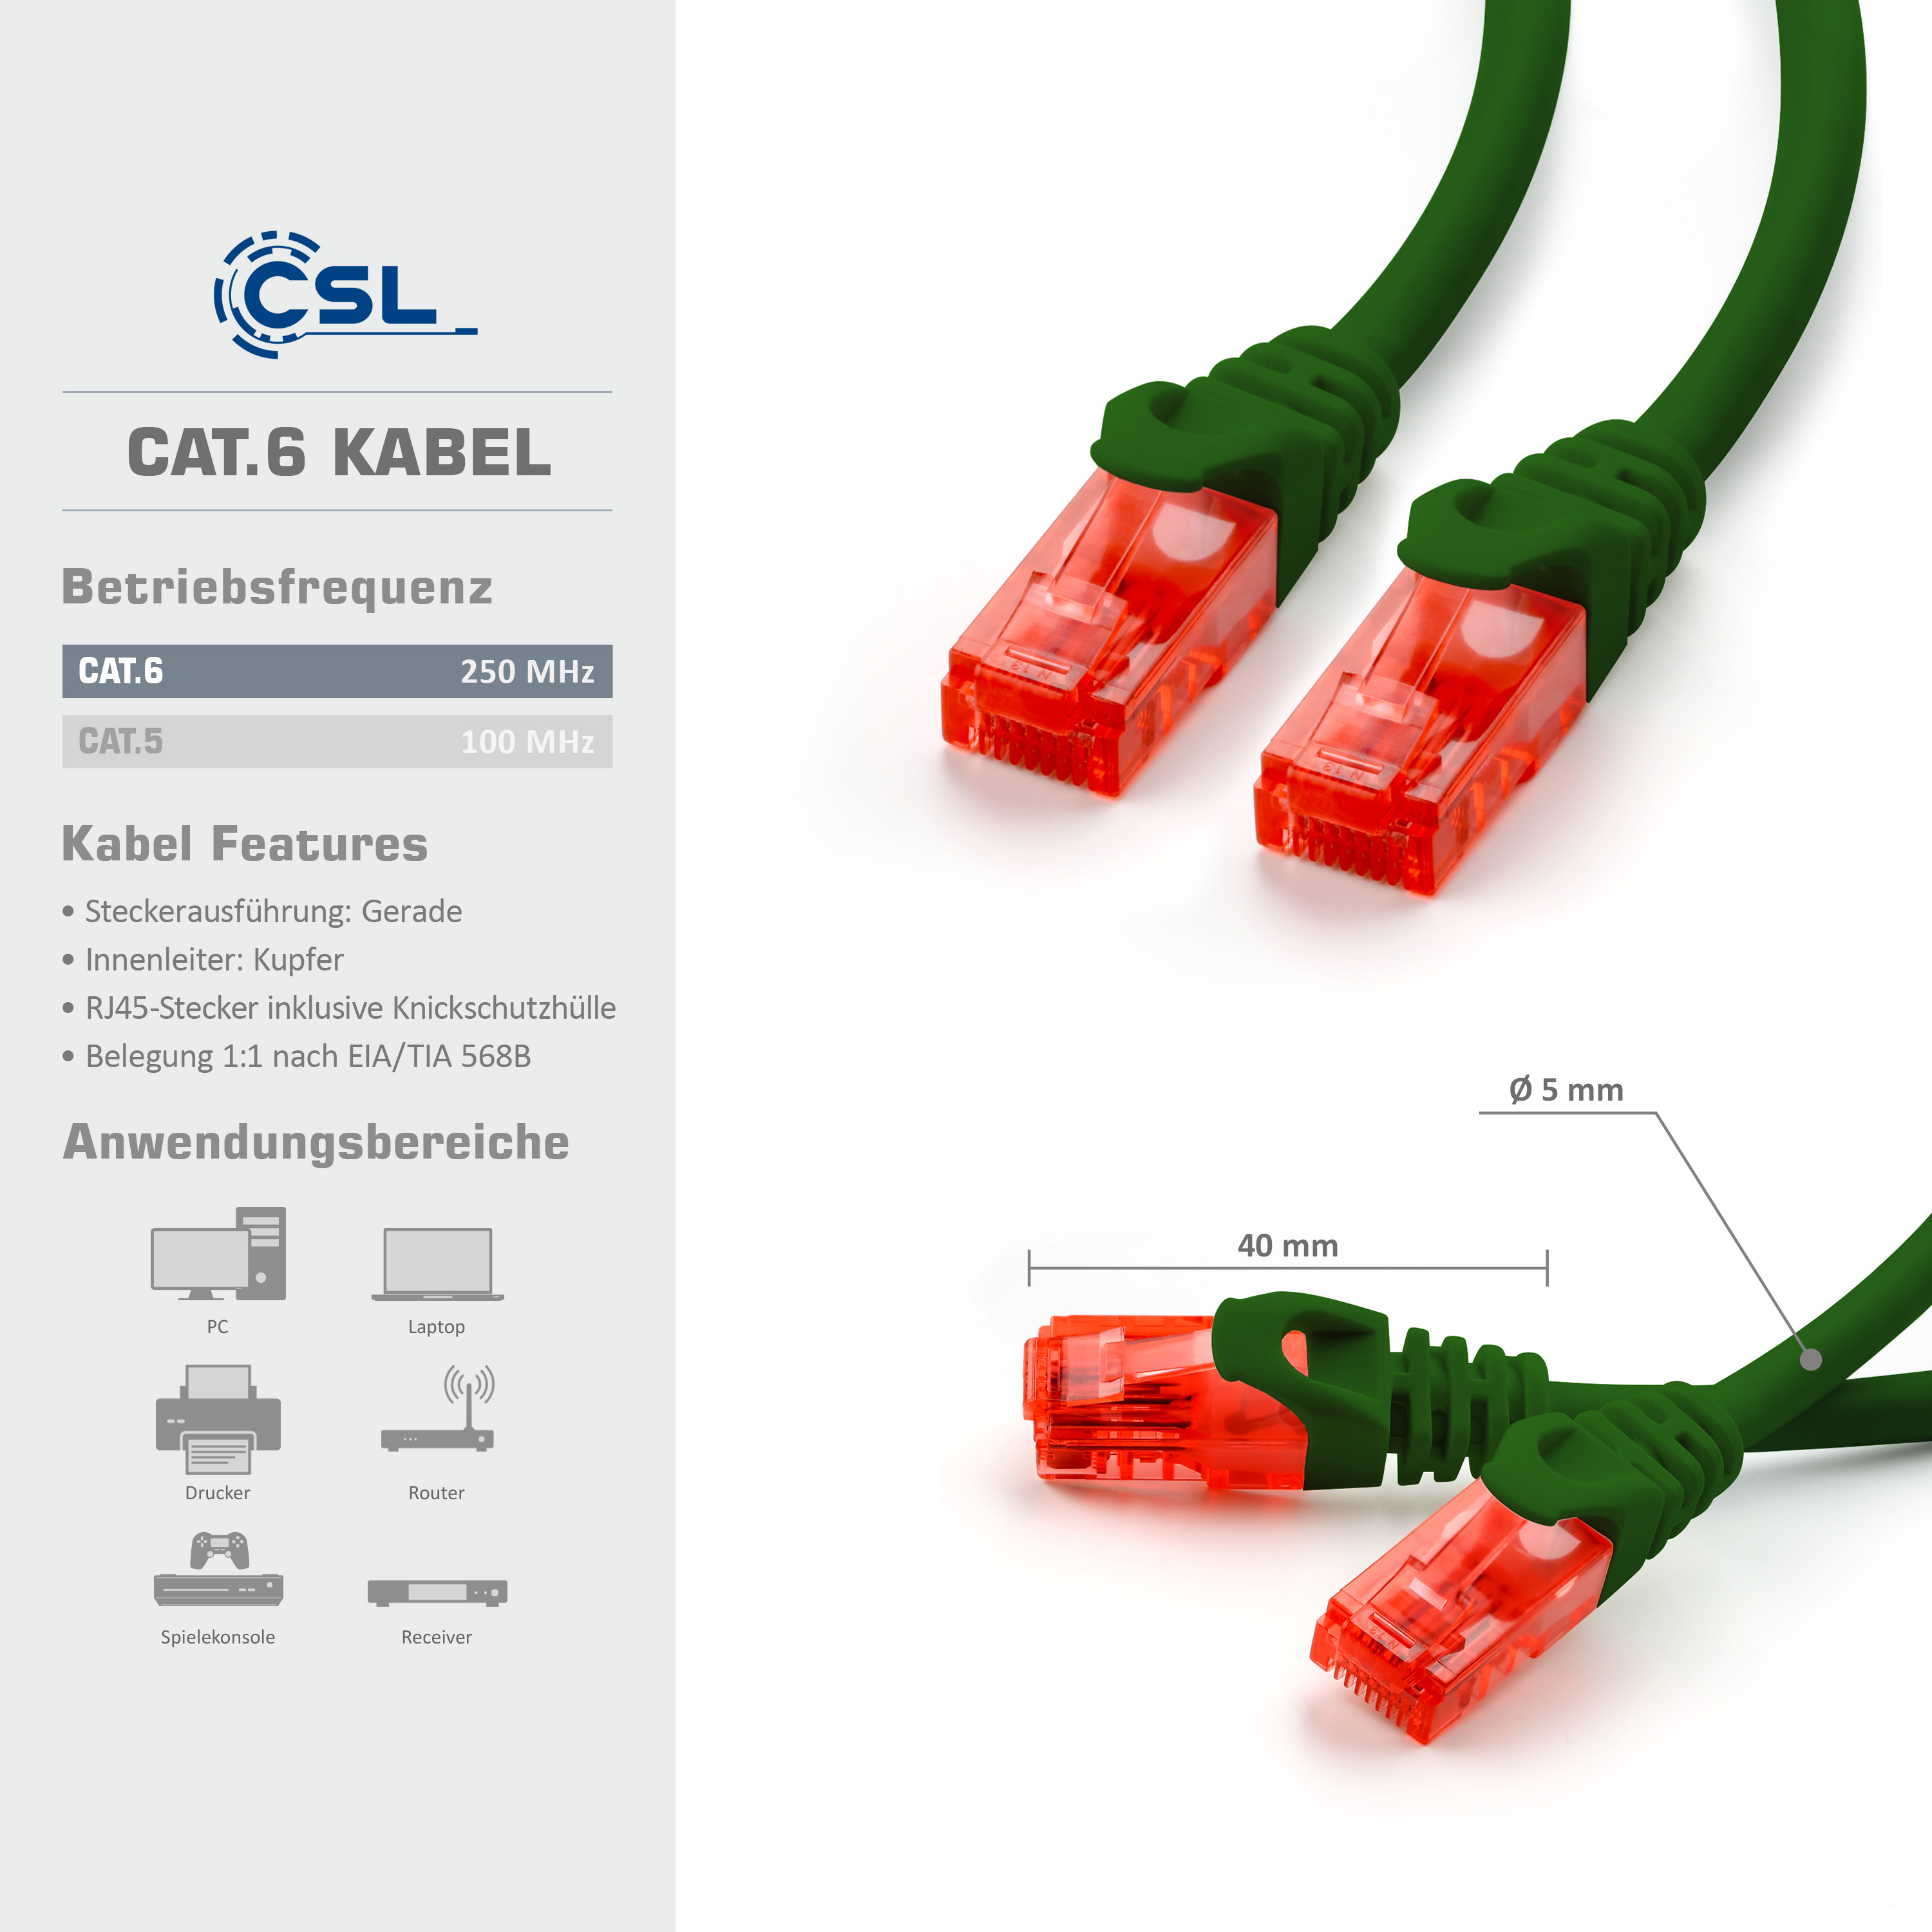 Kabel, Patchkabel, 20m LAN Cat6 CSL grün